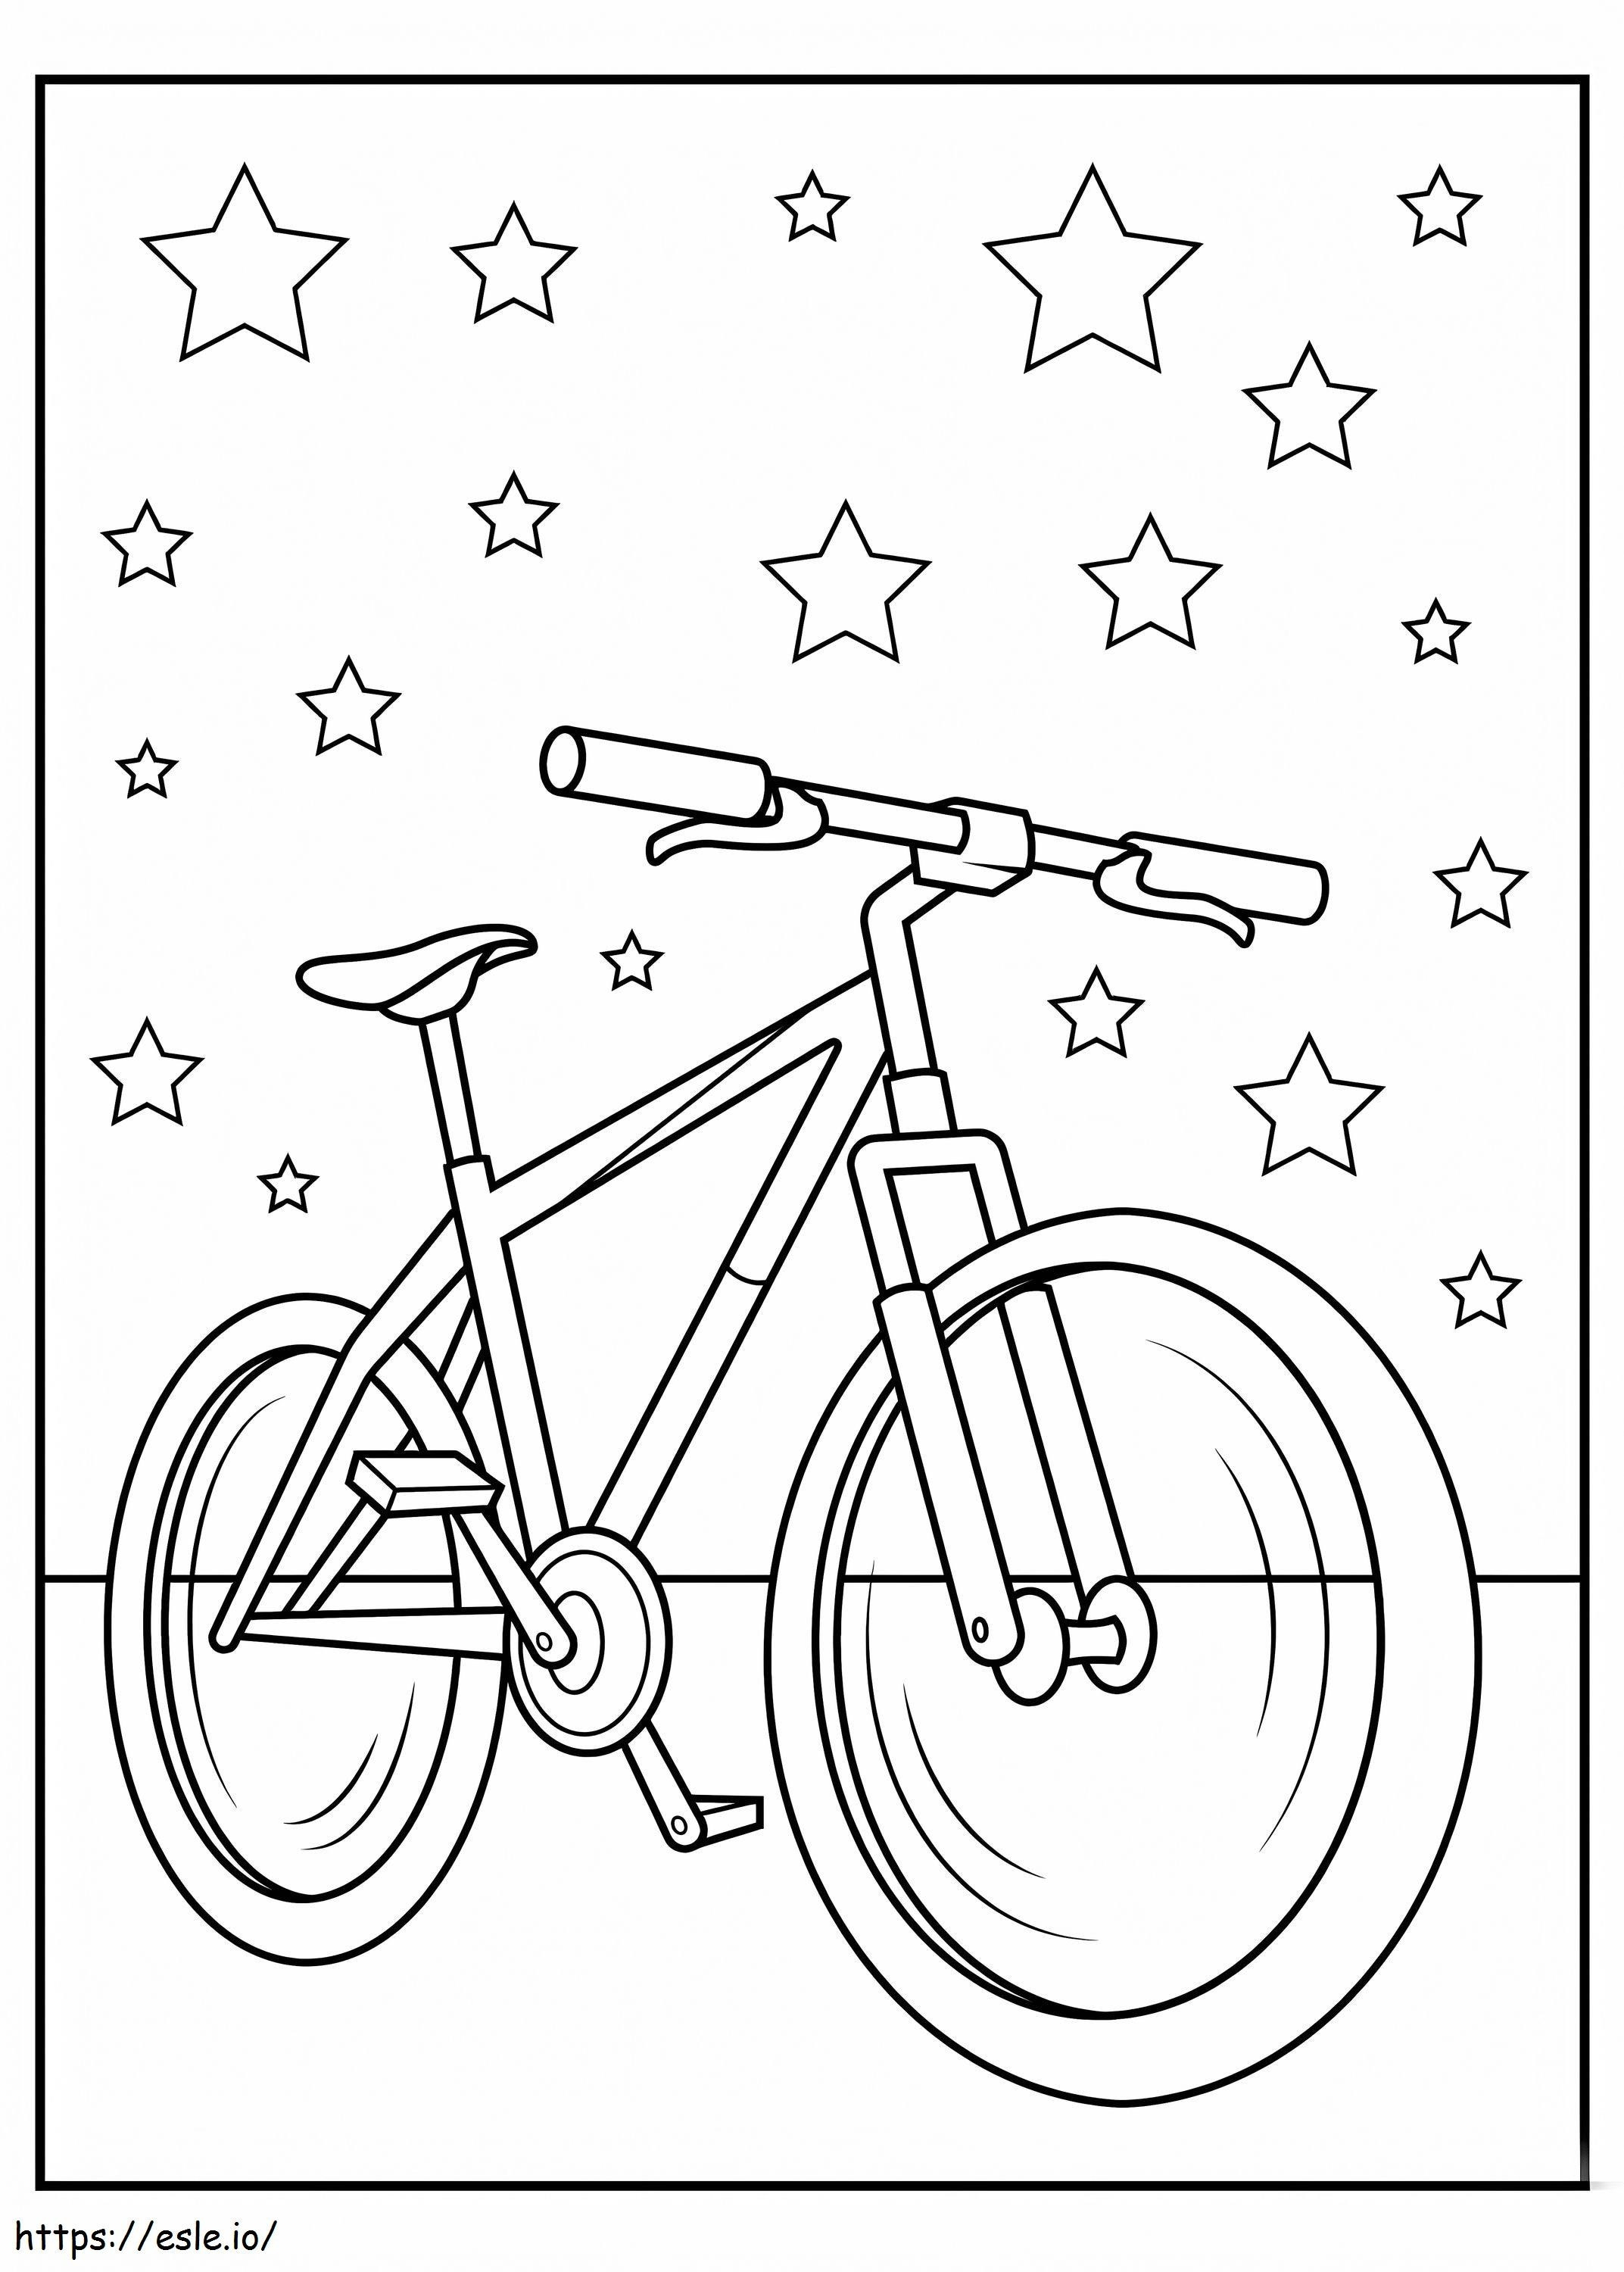 Yıldızlı Bisiklet boyama